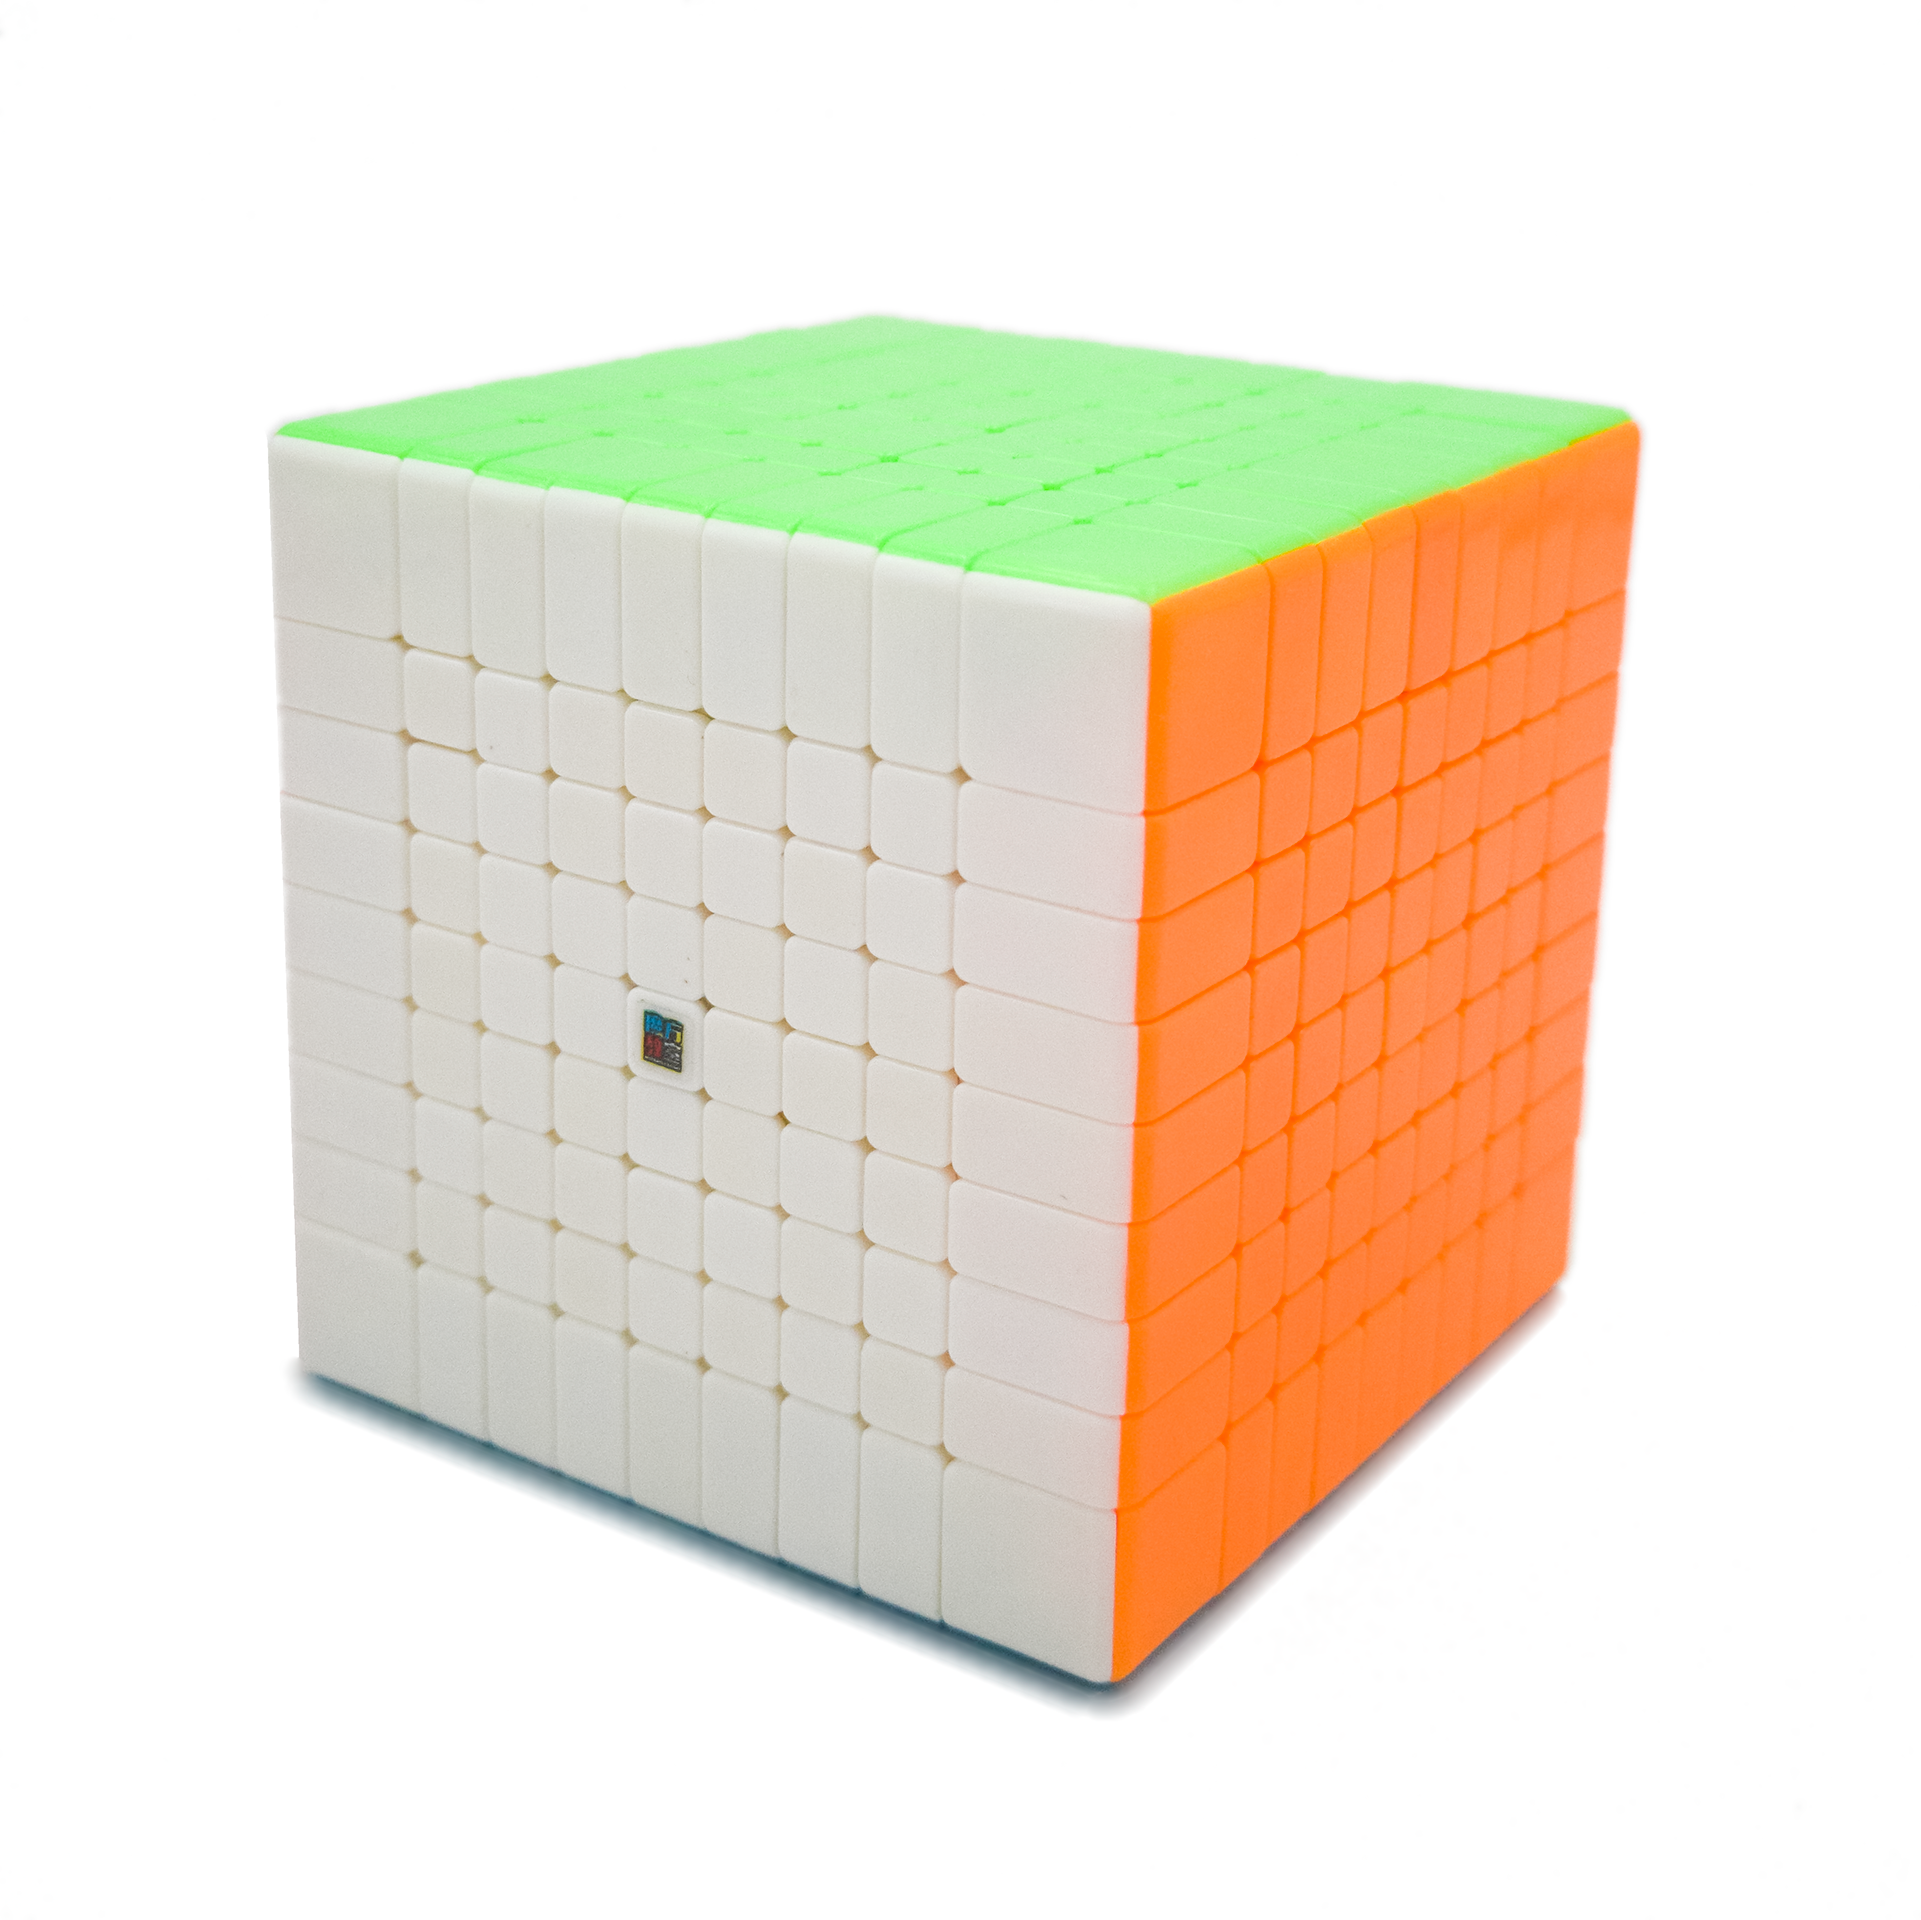 MoFang JiaoShi MeiLong 9x9 - CuberSpace